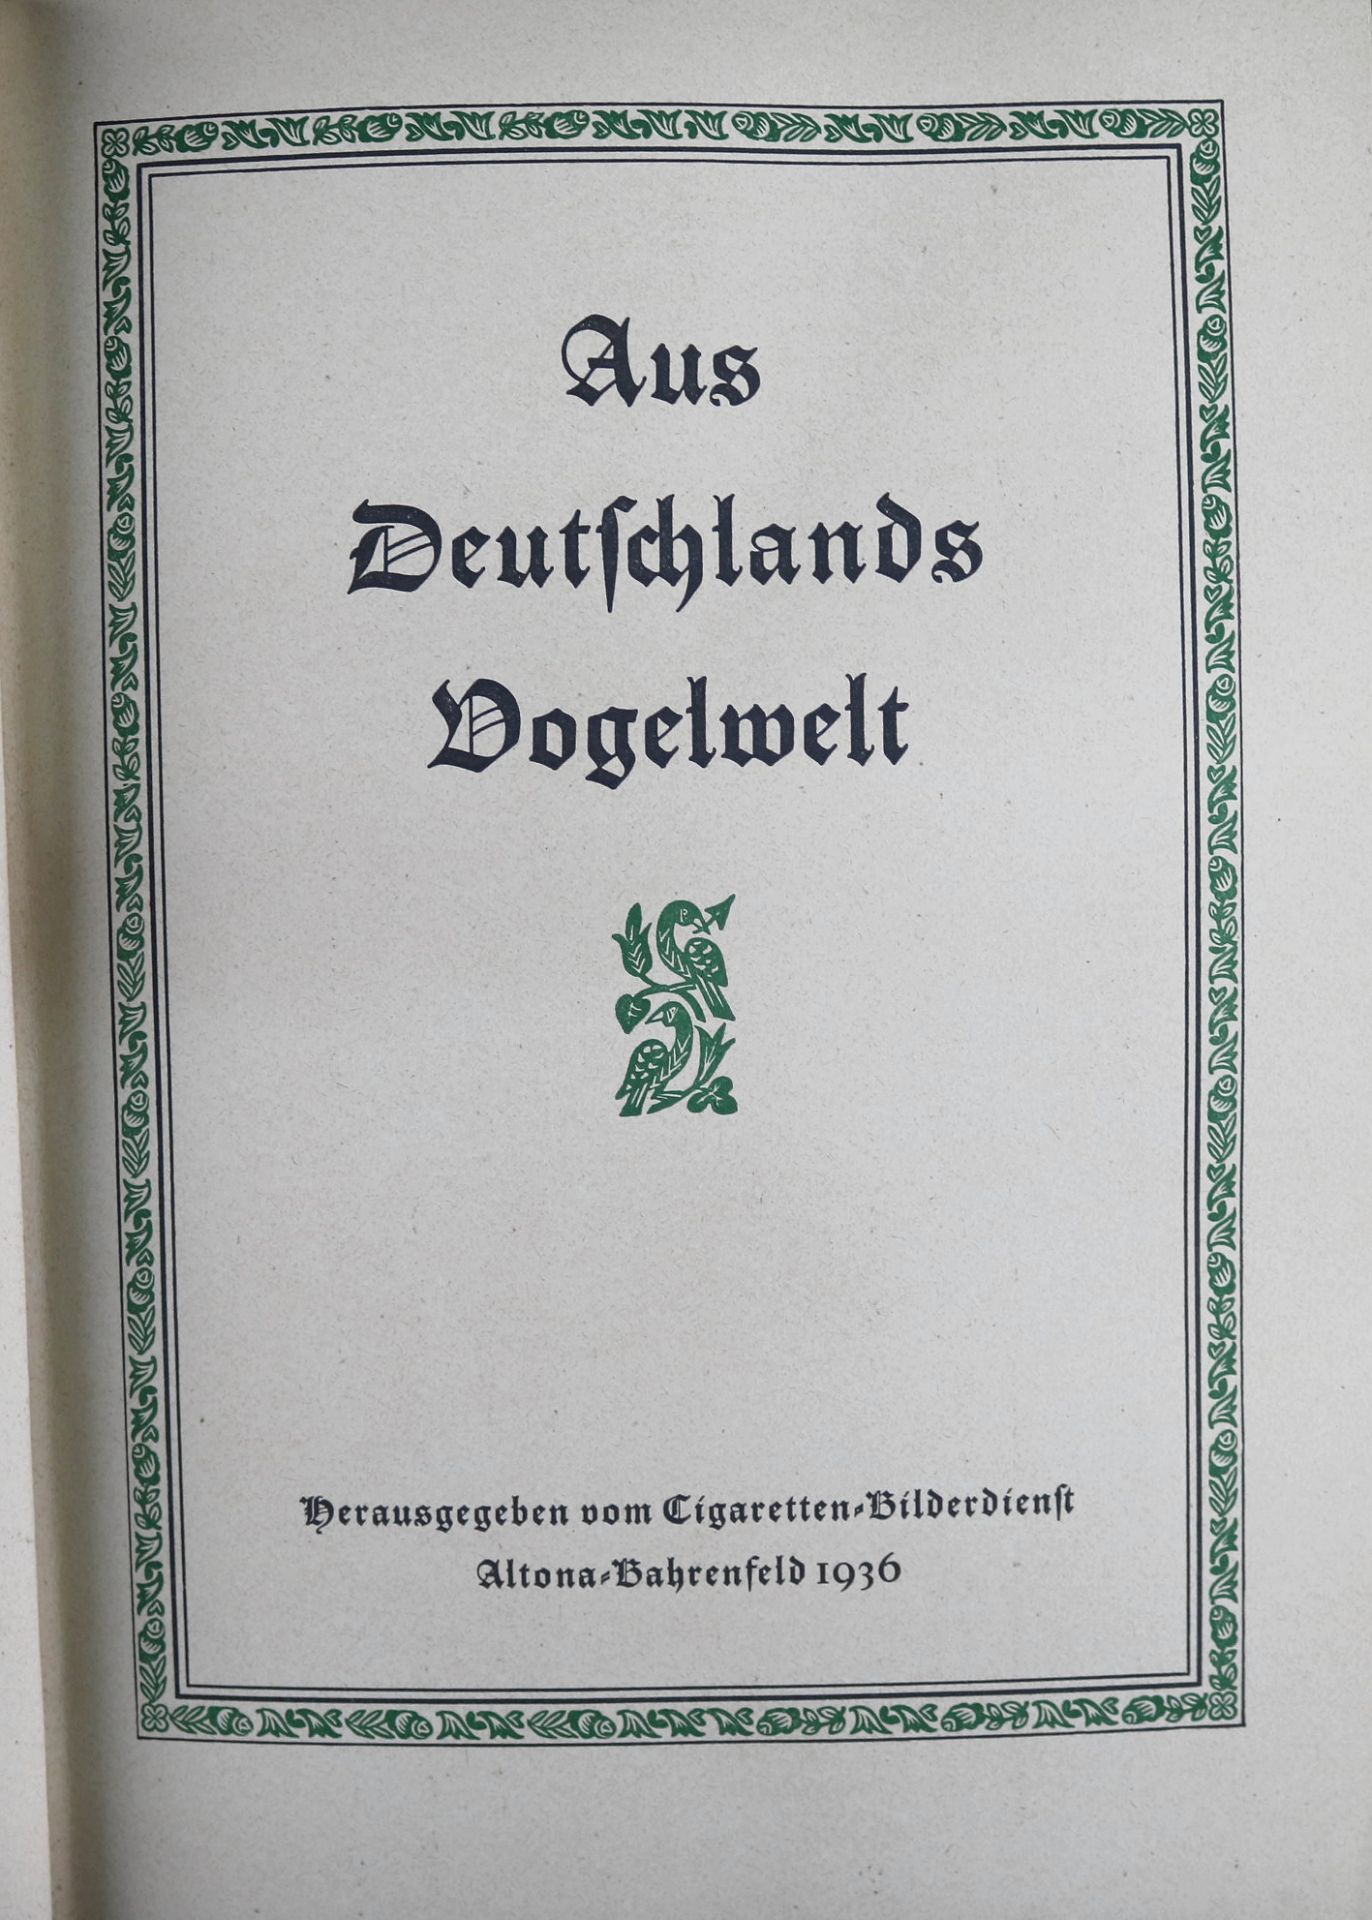 Sammelalbum "Aus Deutschlands Vogelwelt", Cigaretten-Bilderdienst, Altona Bahrenfeld 1936 - Bild 2 aus 4